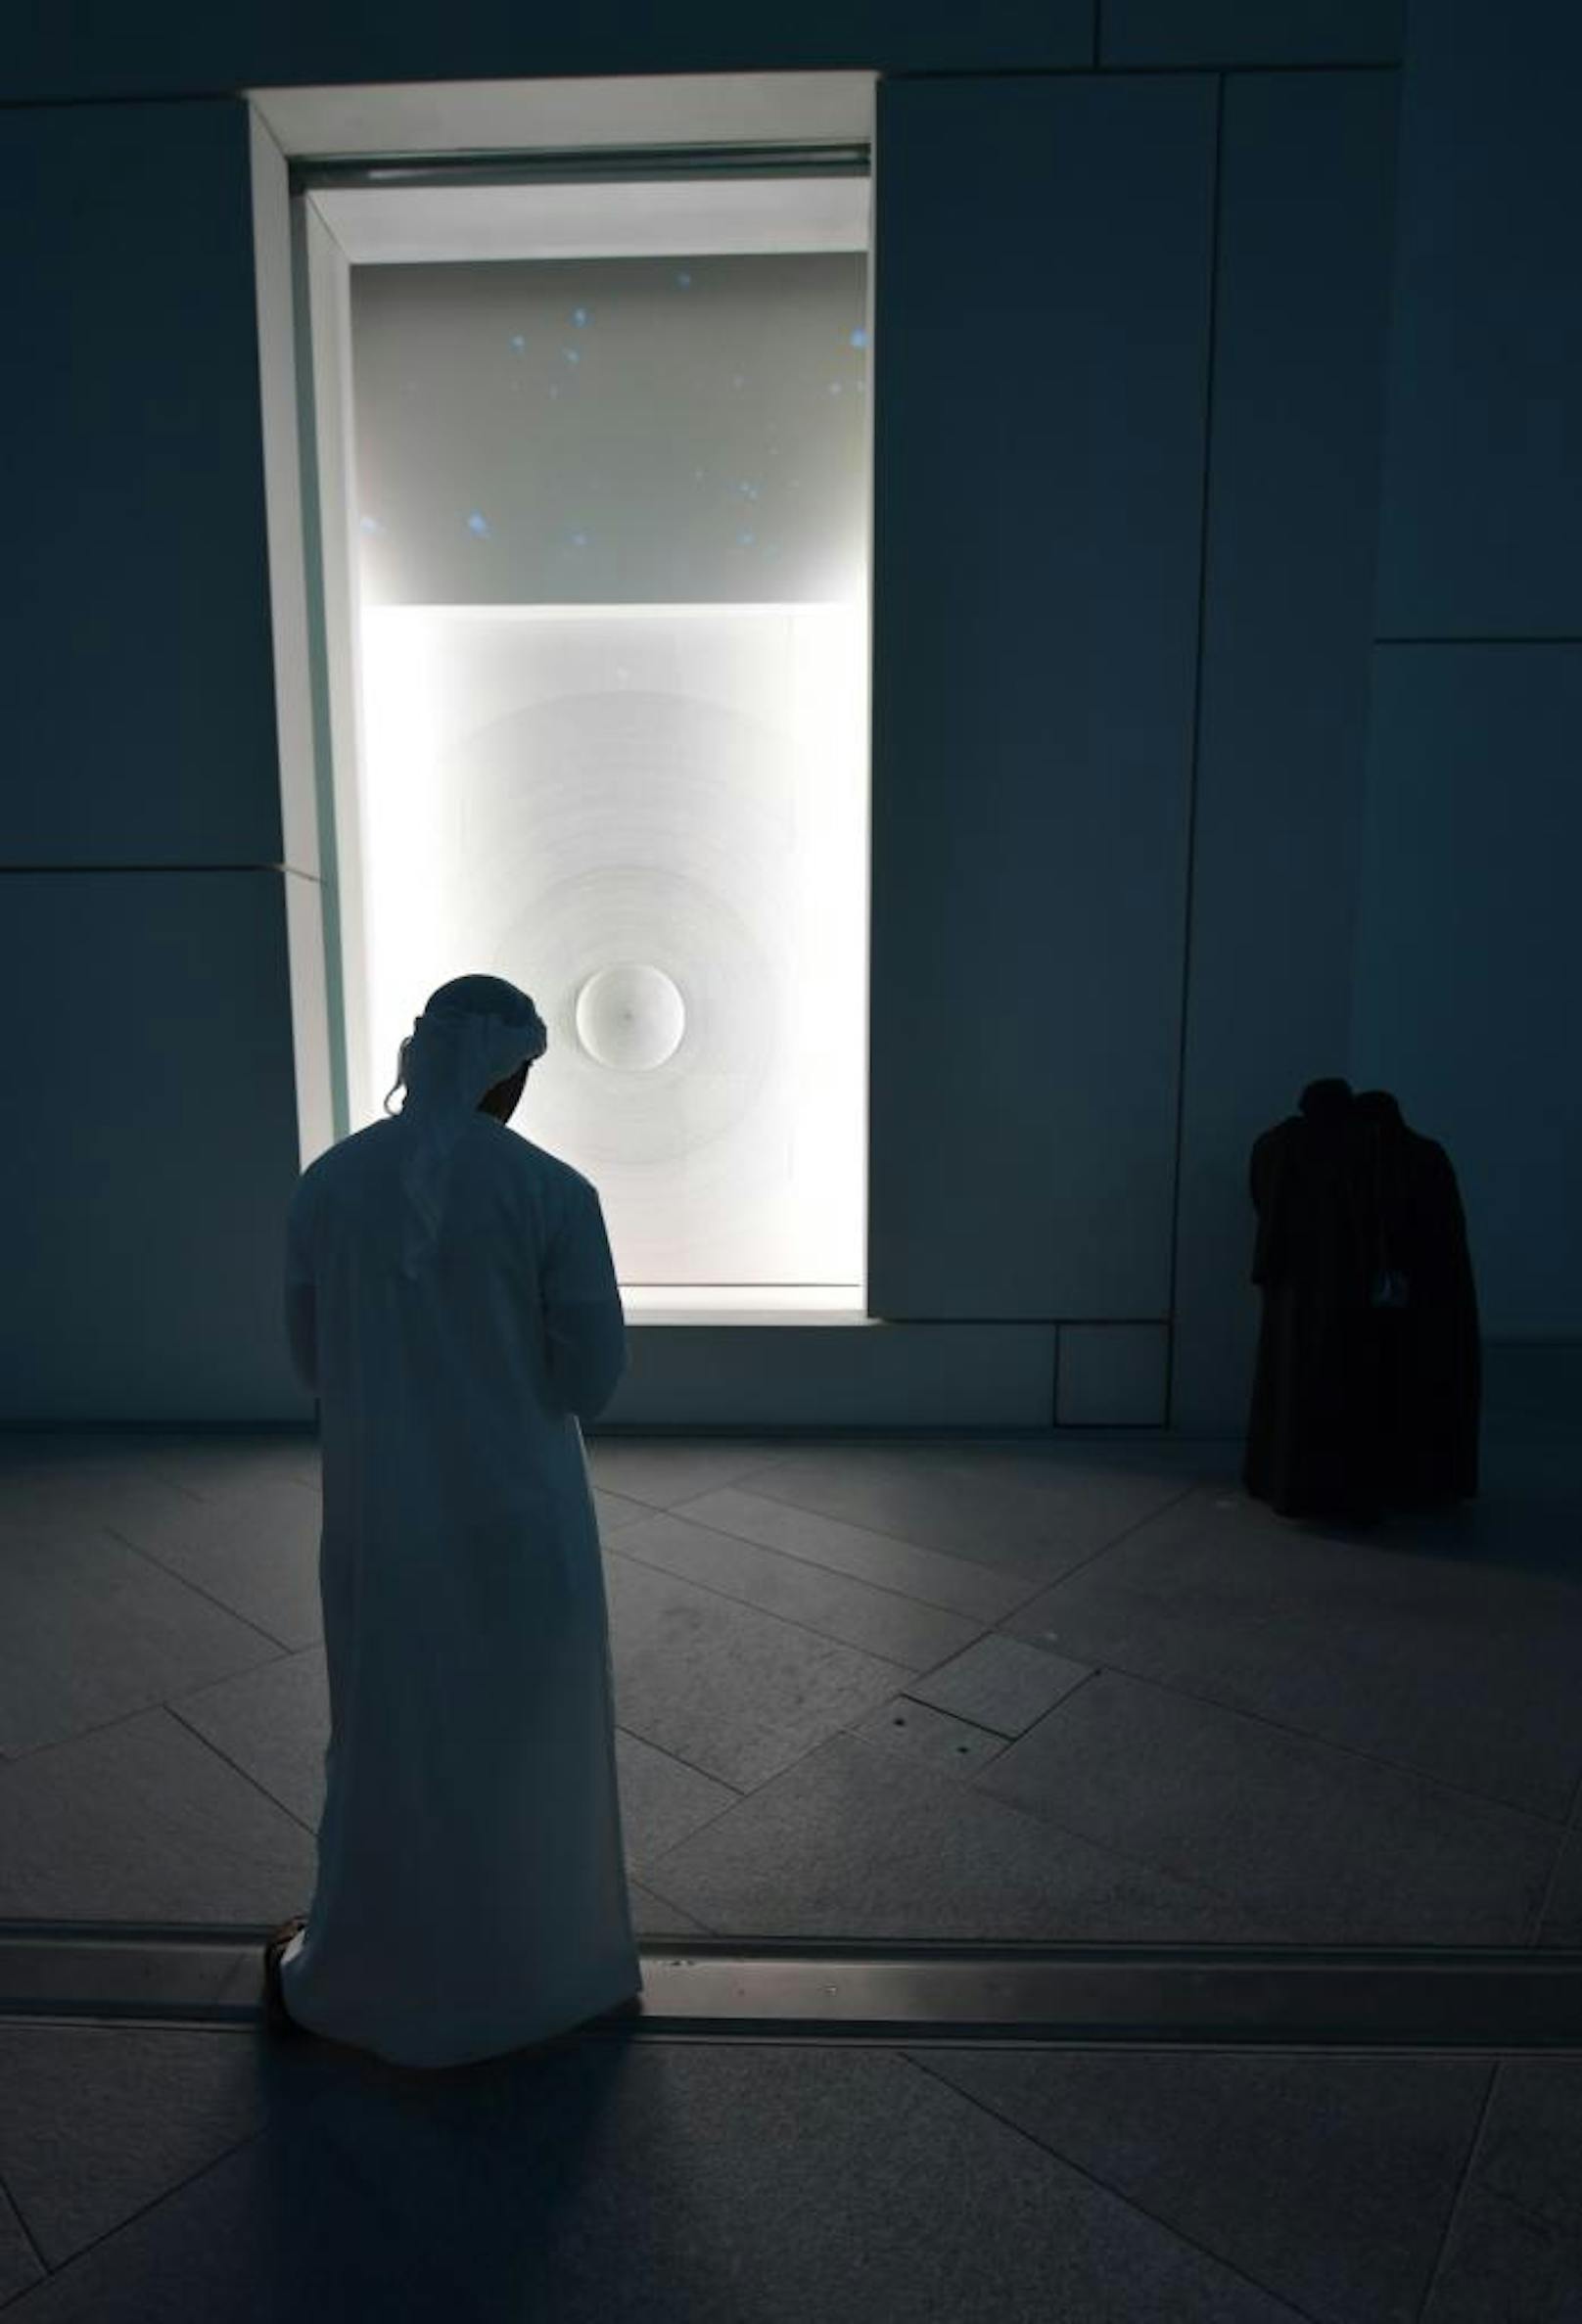 Ein Besucher begutachtet das Werk "Germination" des italienischen Künstlers Giuseppe Penone im Louvre Abu Dhabi Museum.